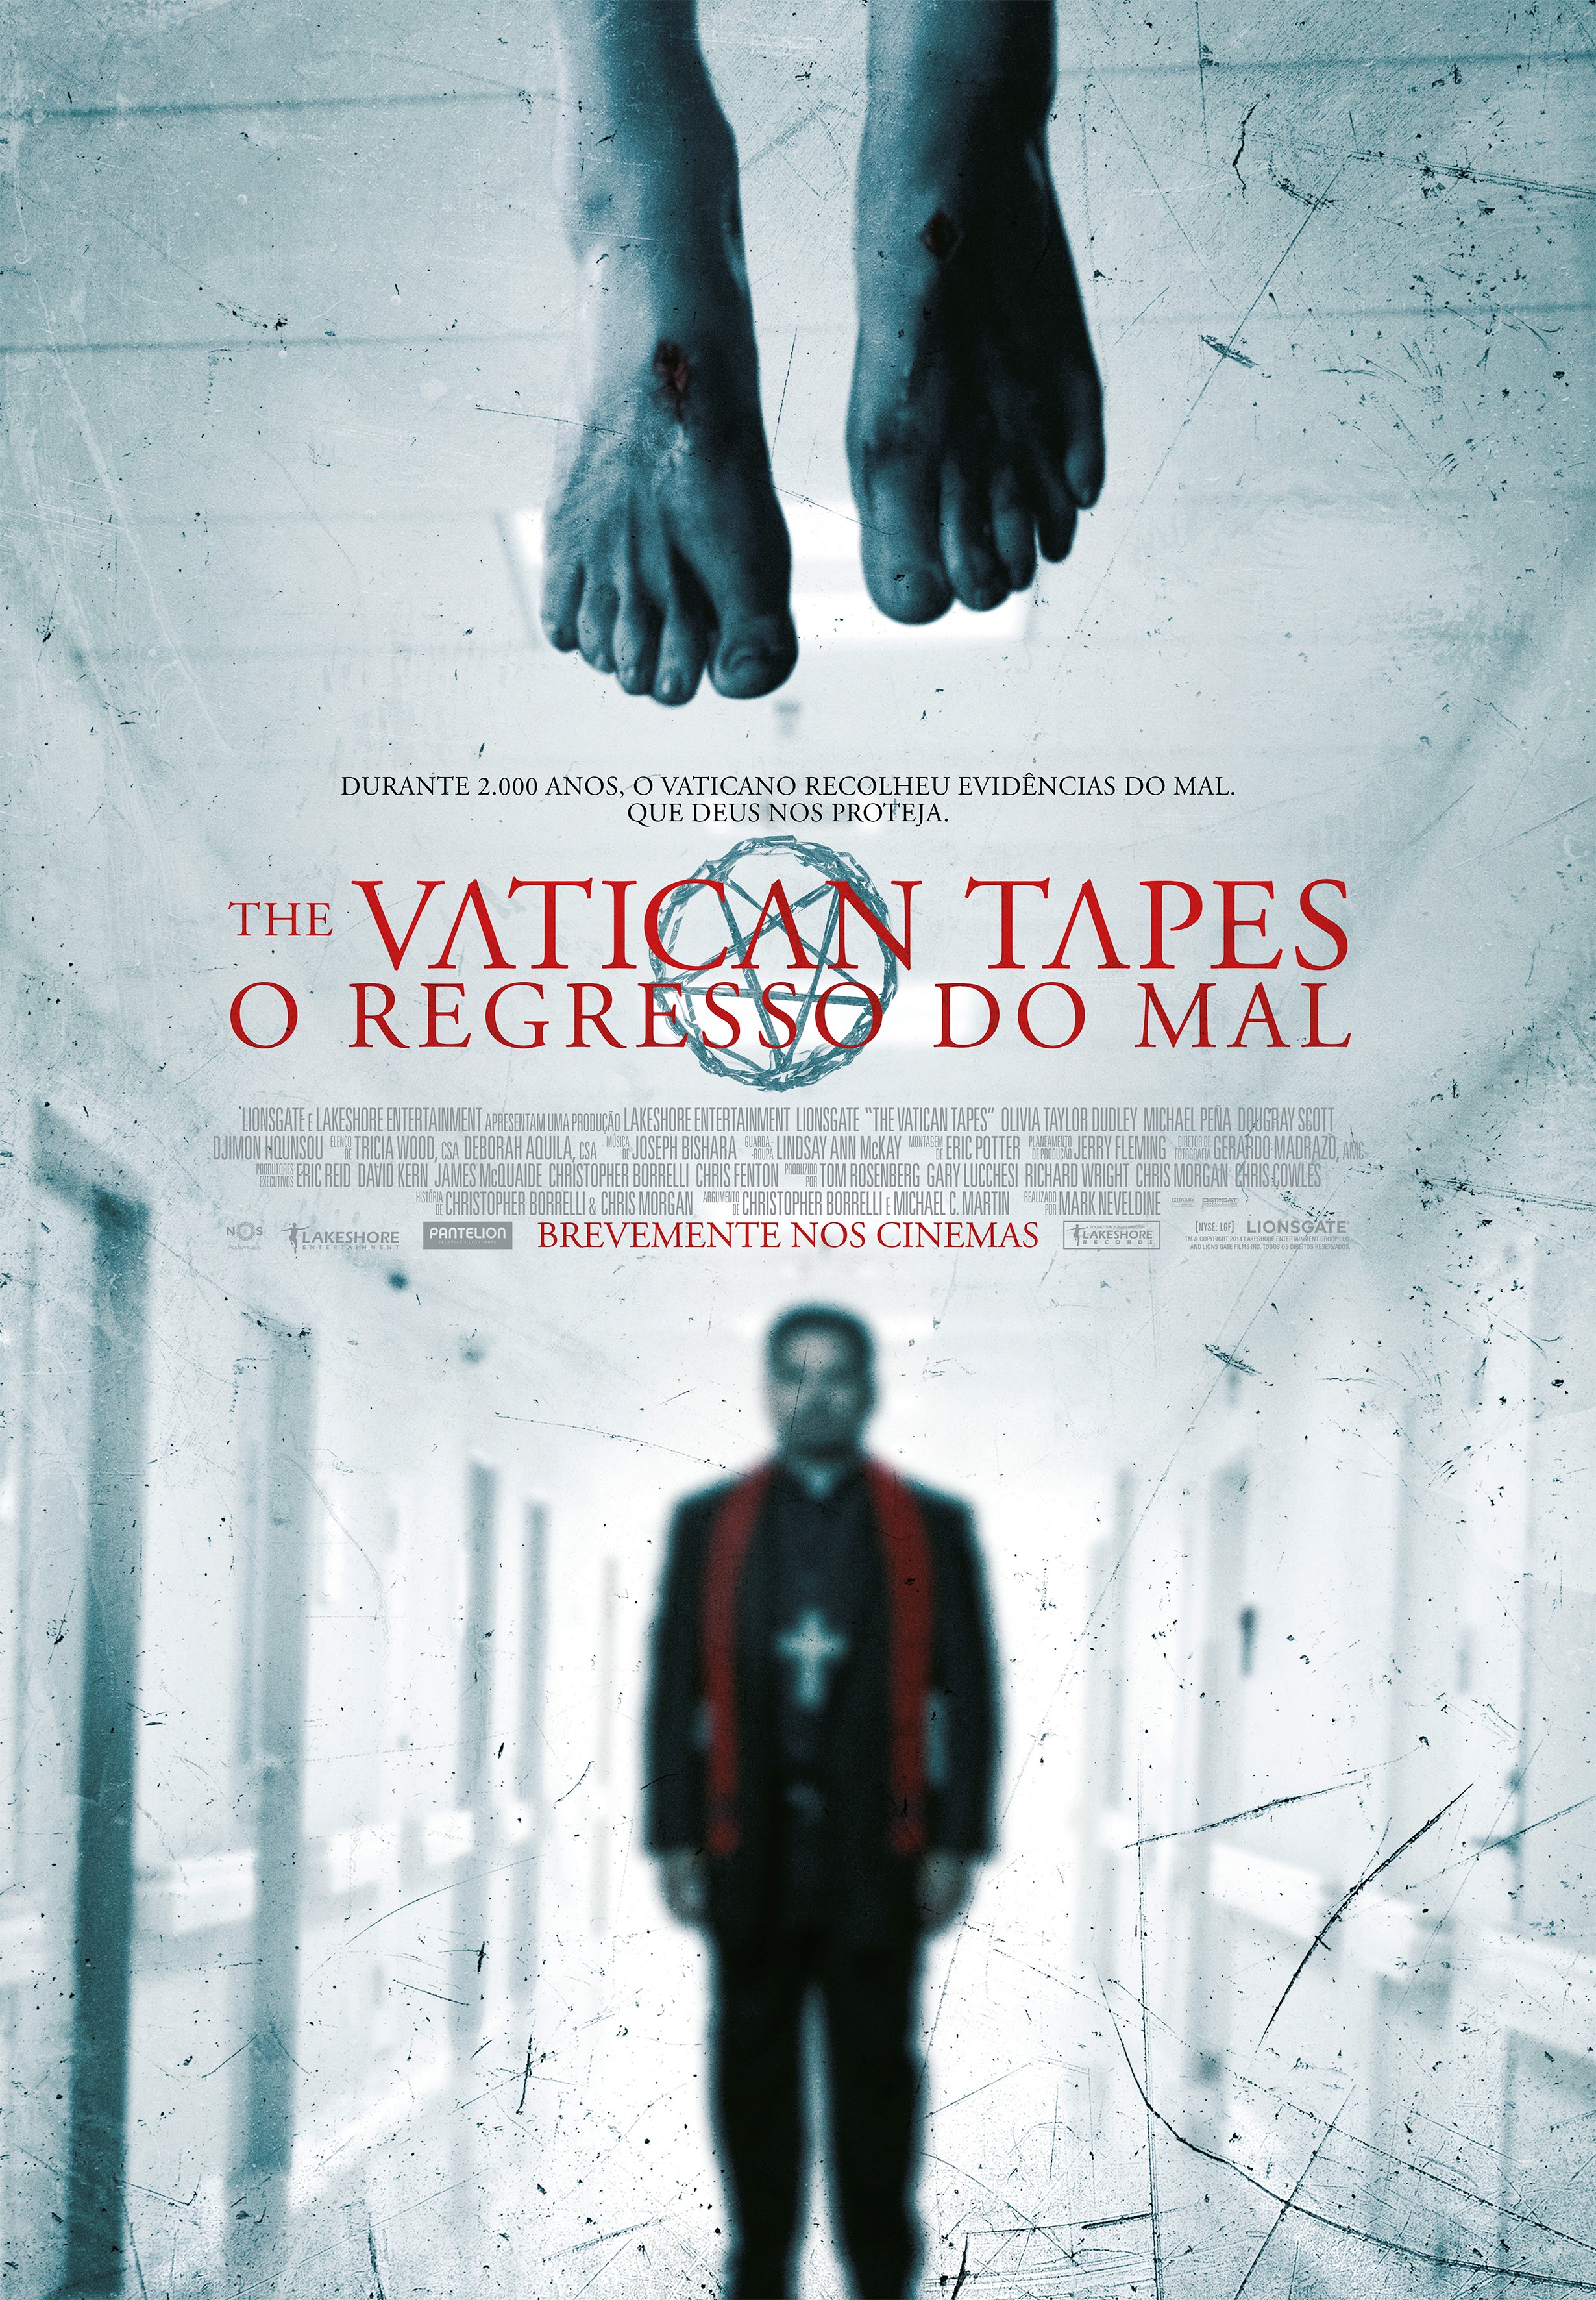 Vatican Tapes